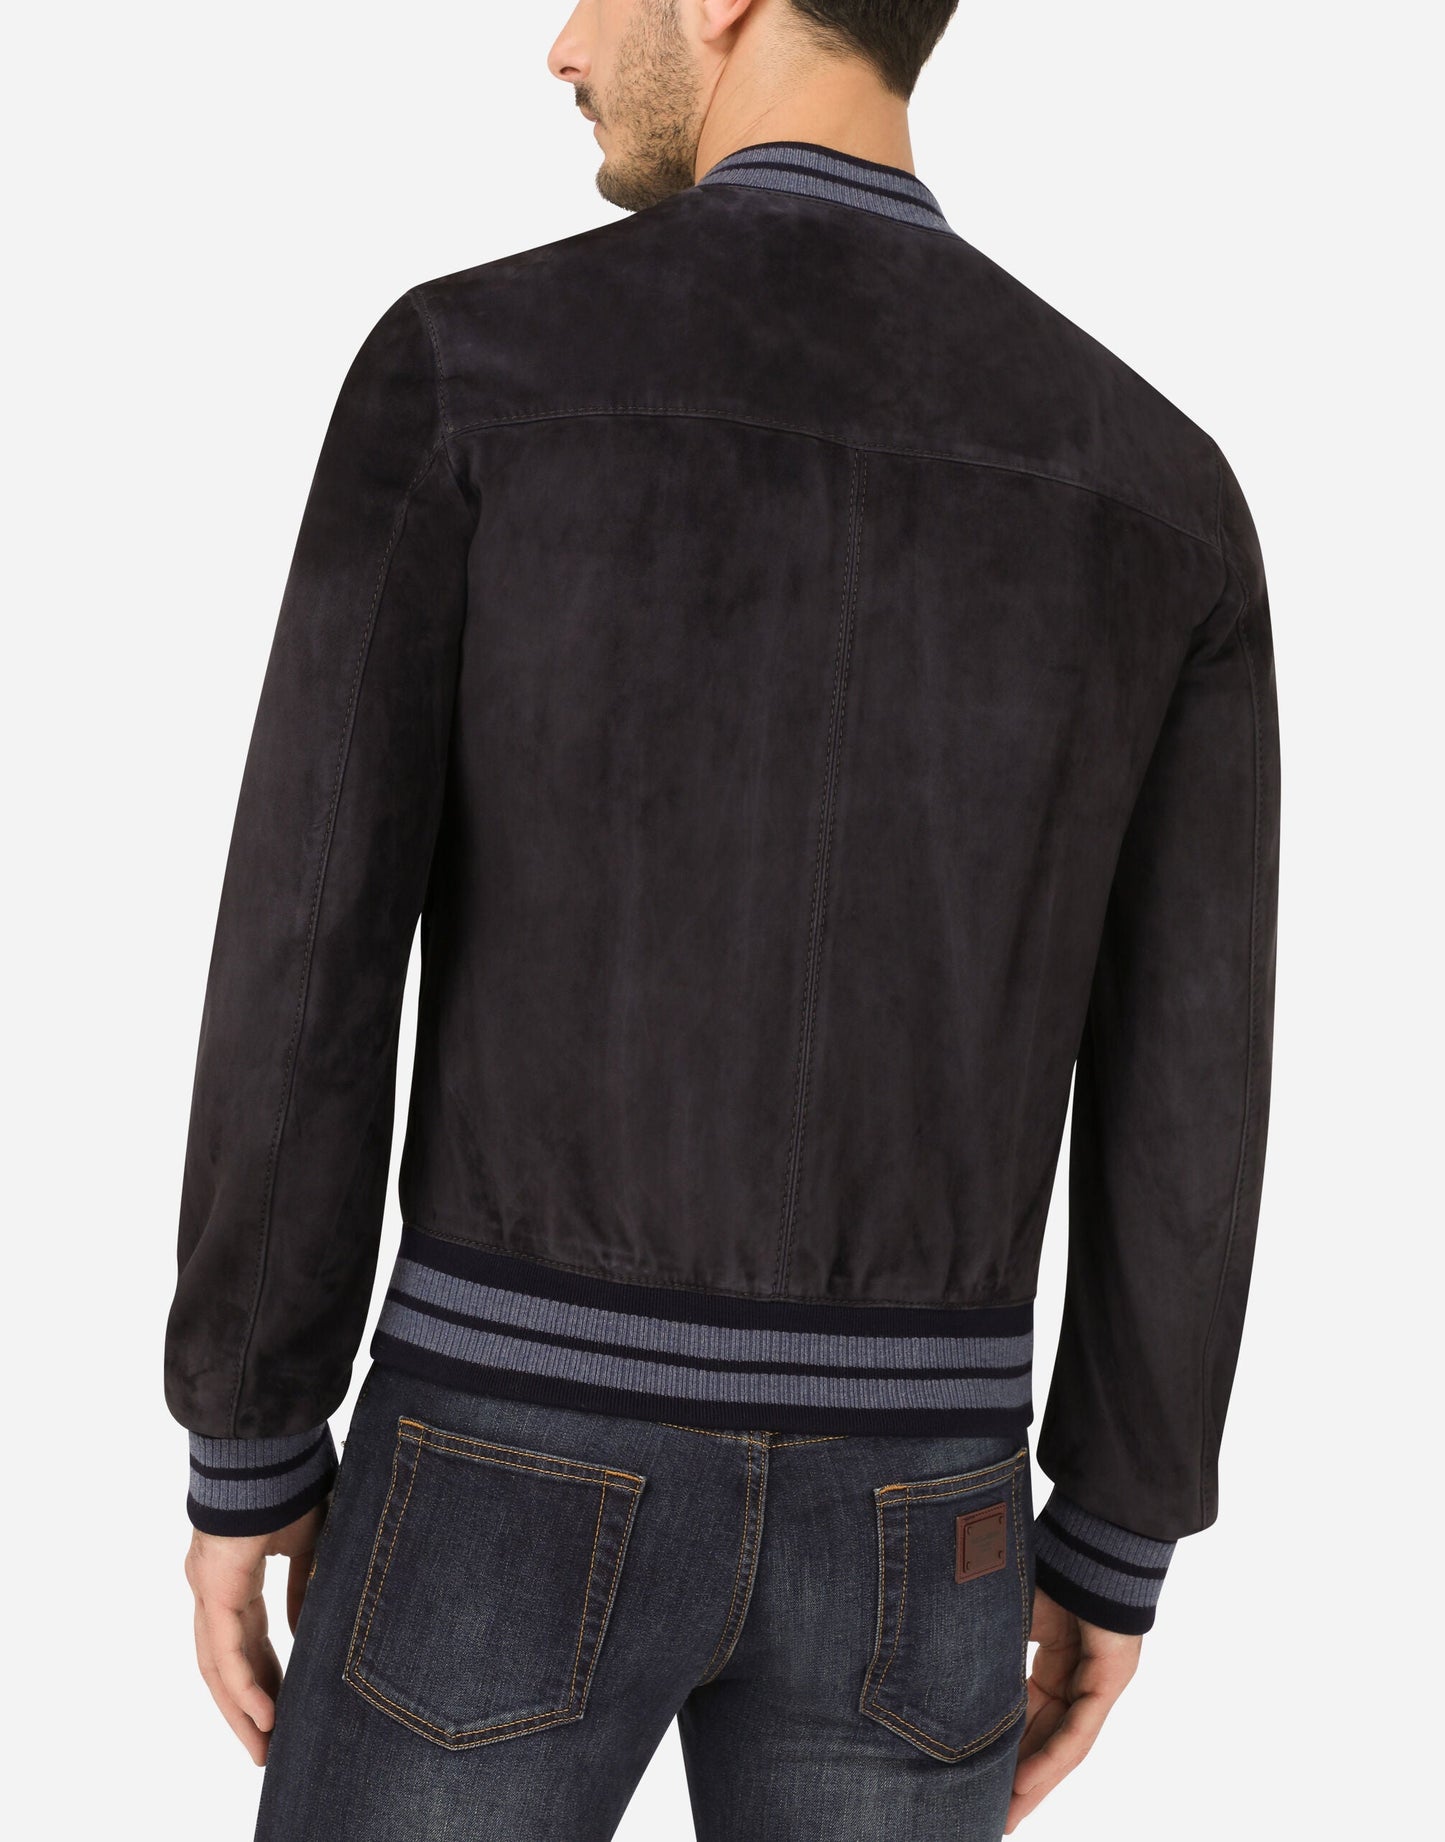 Men's Black Suede Leather Bomber jacket